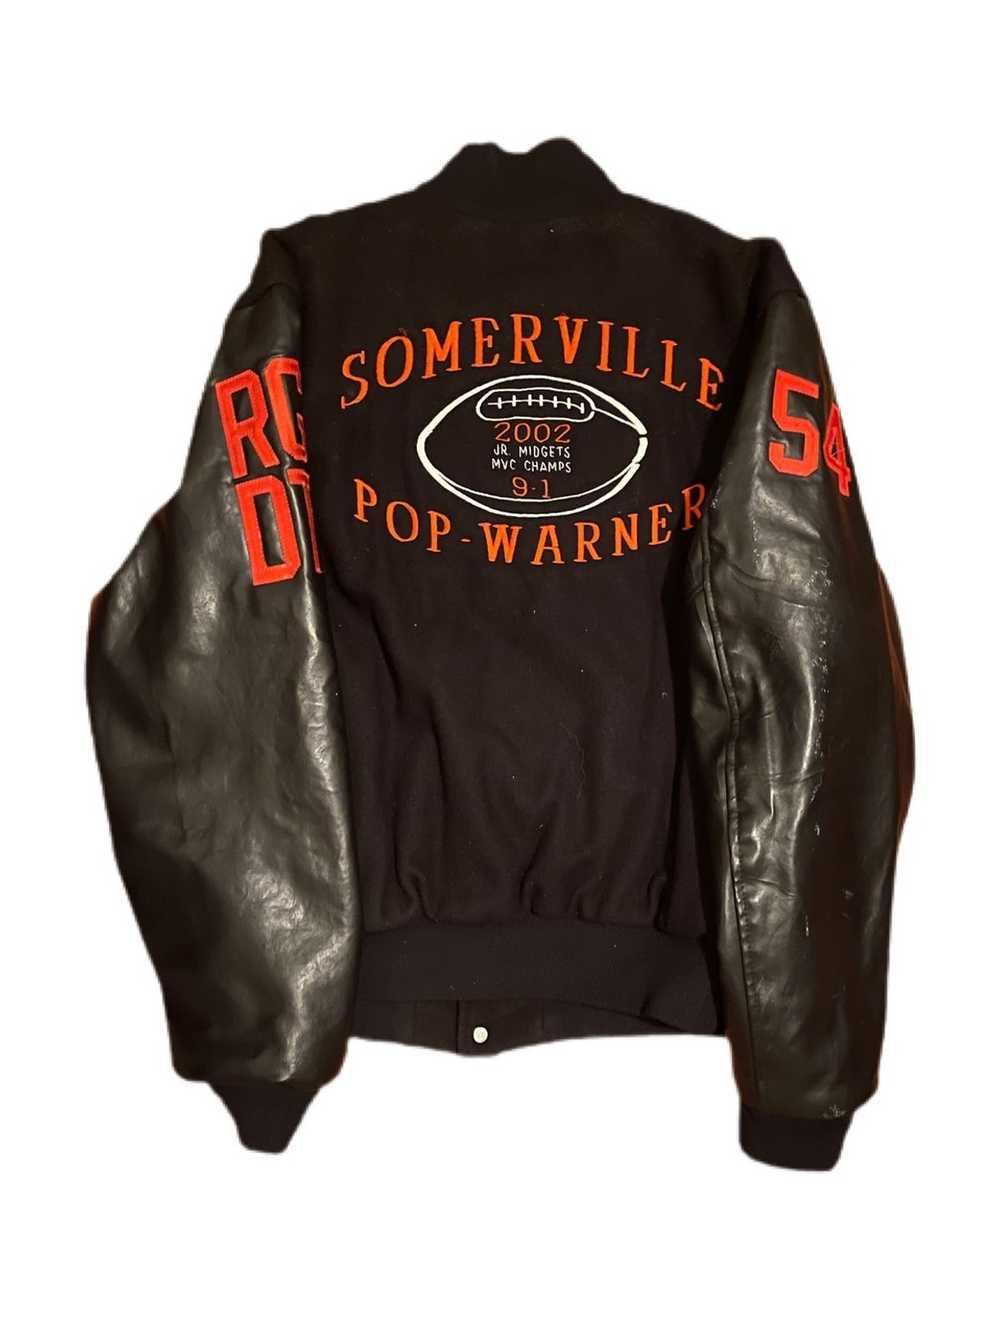 Vintage 2002 Somerville Pop-Warner varsity jacket - image 2